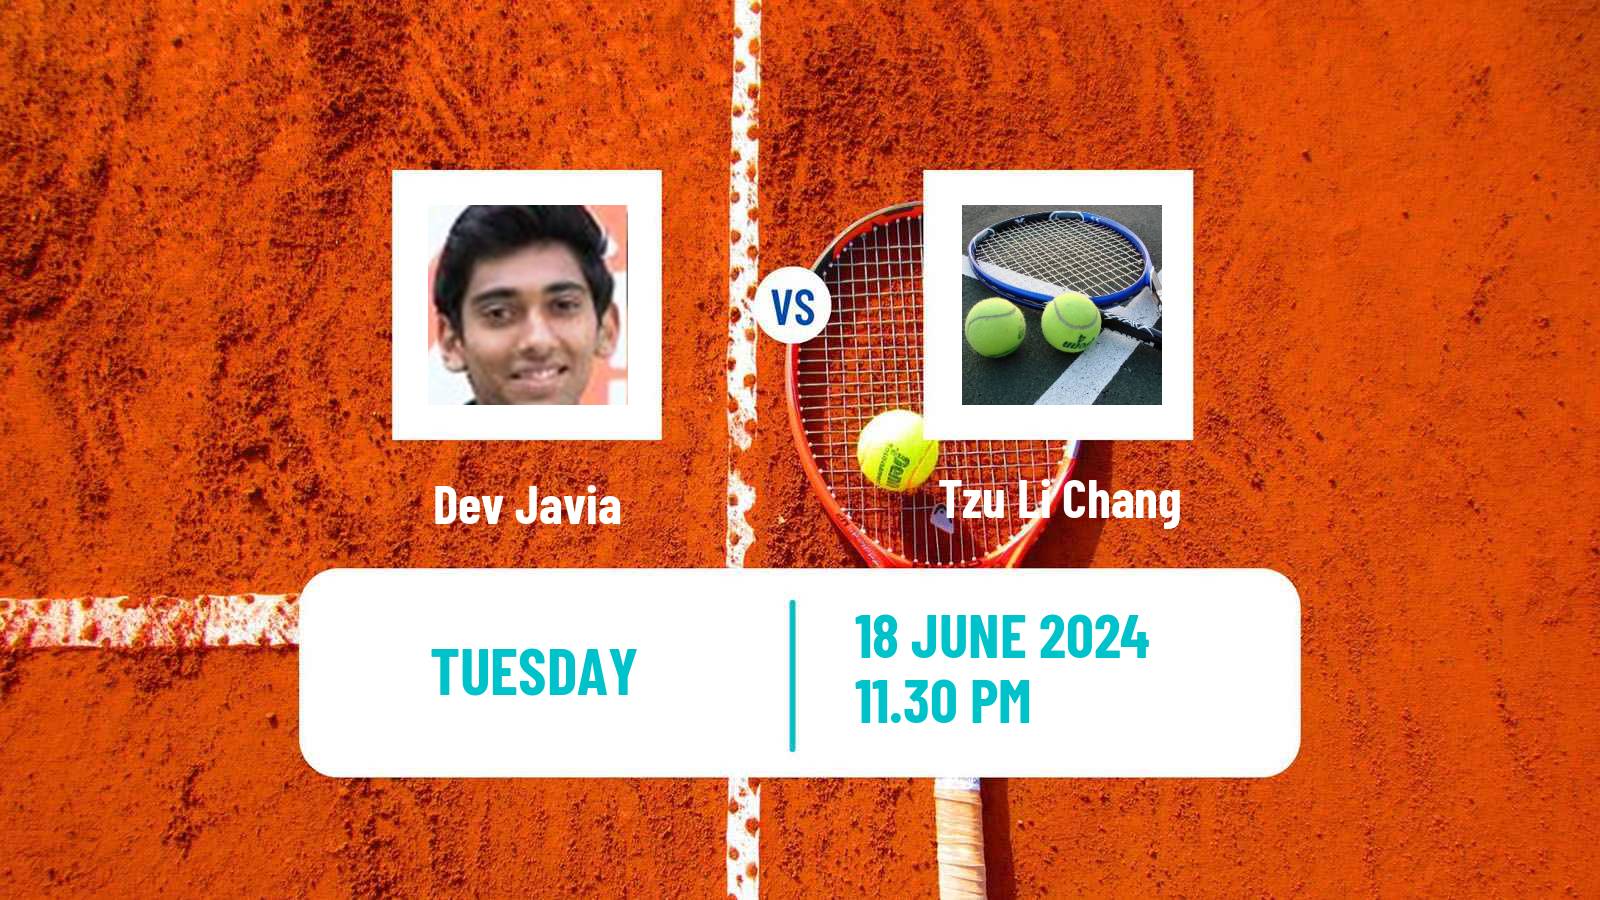 Tennis ITF M15 Hong Kong 2 Men Dev Javia - Tzu Li Chang